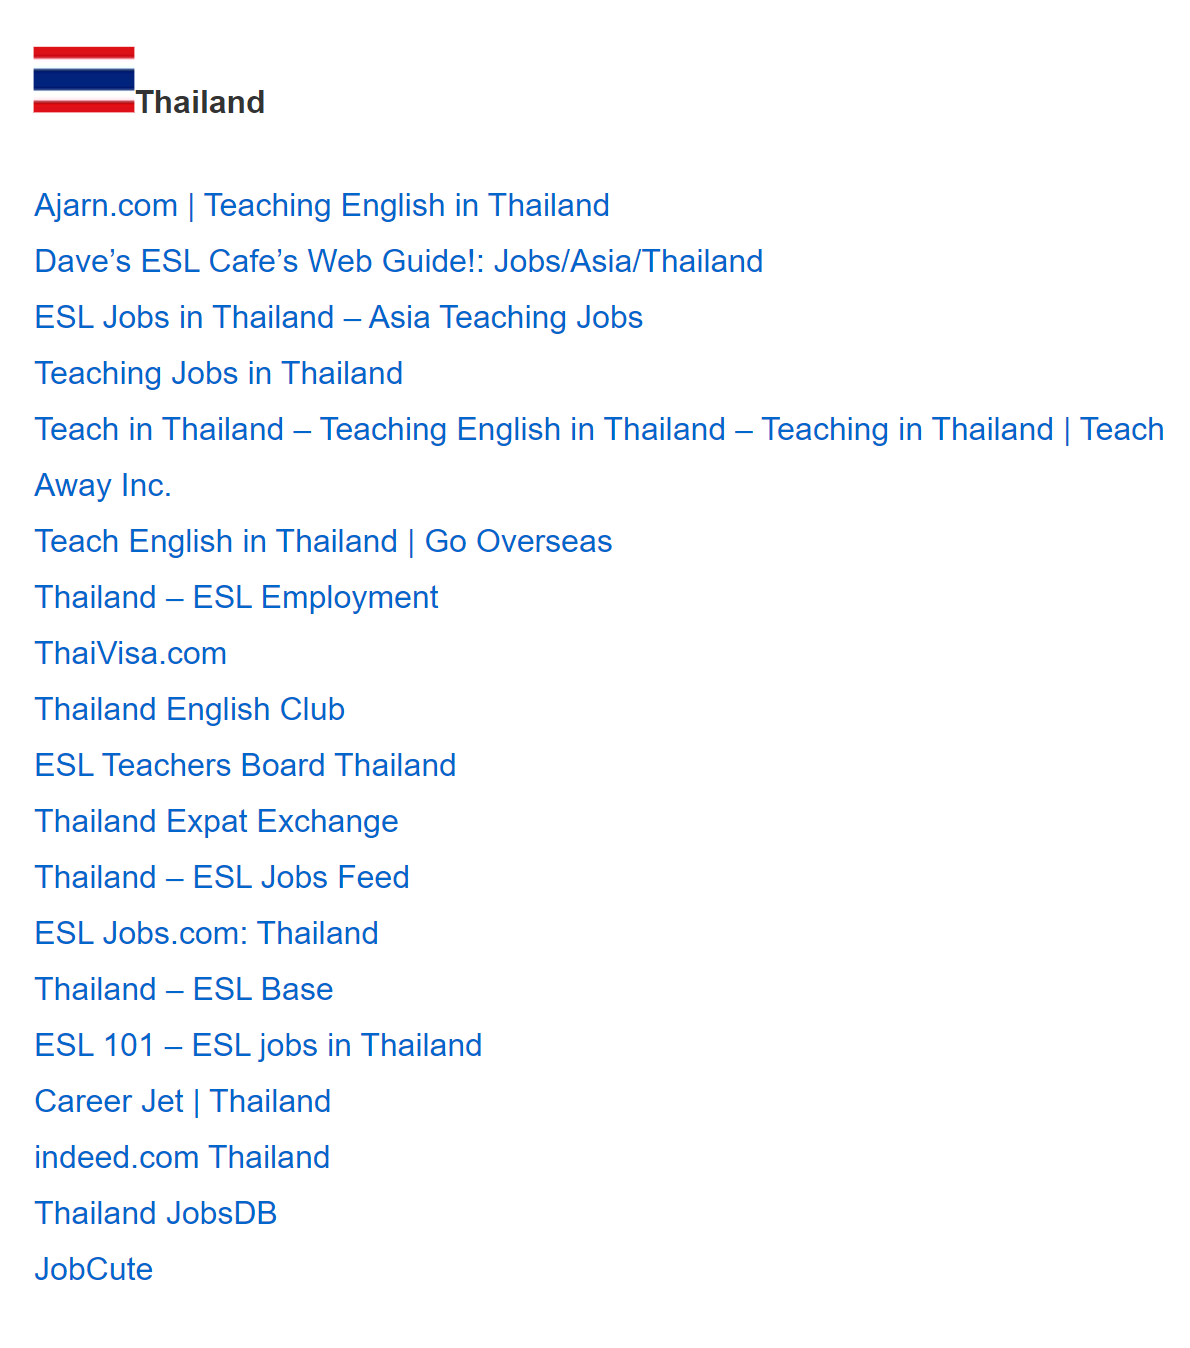 Список ресурсов по поиску работы в Таиланде, доступный после получения сертификата TEFL